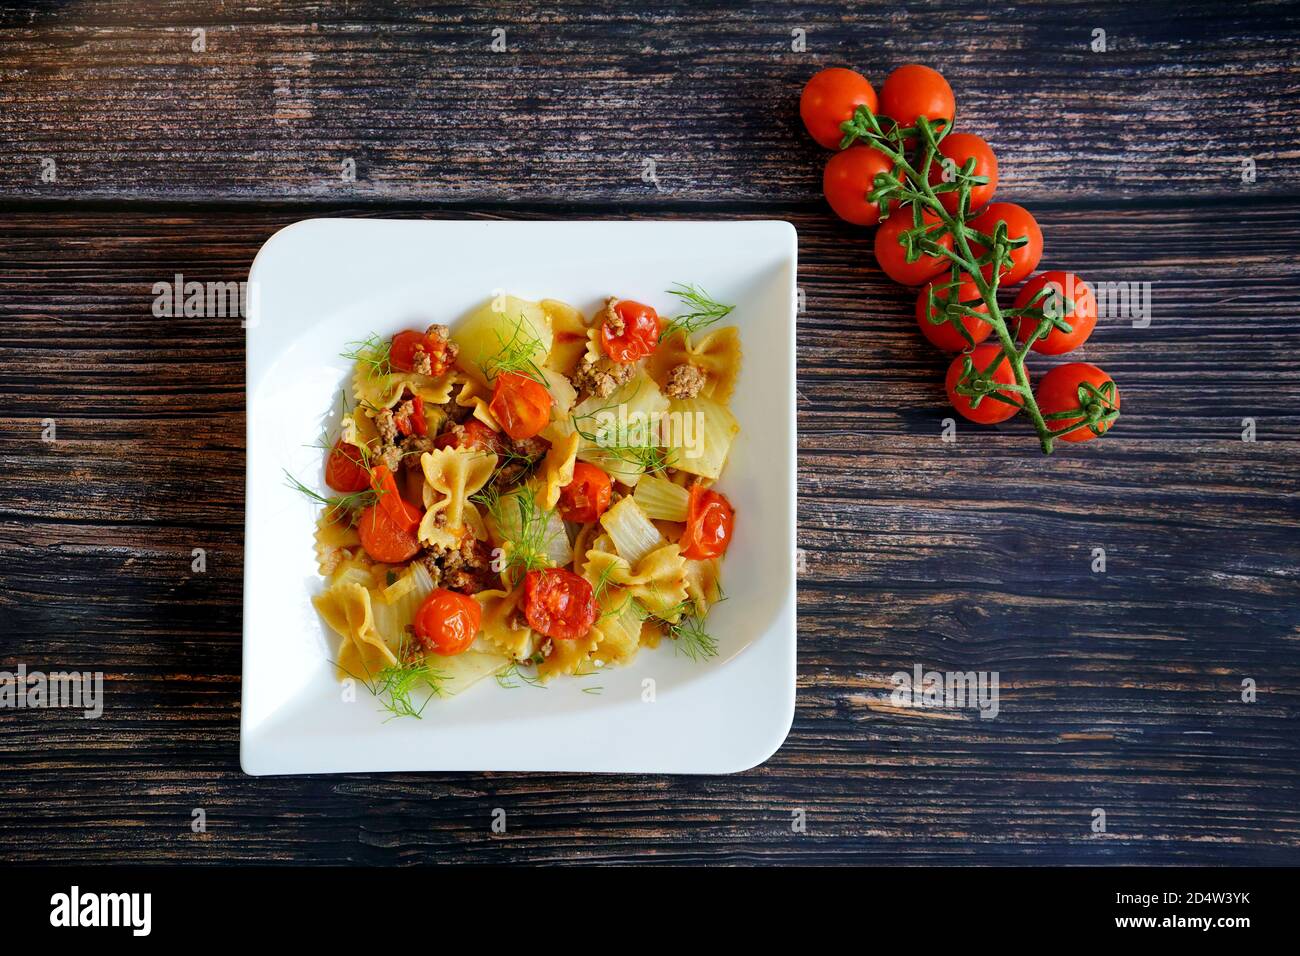 Cucina casalinga tedesca: Finocchio fresco con carne tritata, pasta e pomodori su un piatto bianco con fondo tavola in legno. Foto Stock